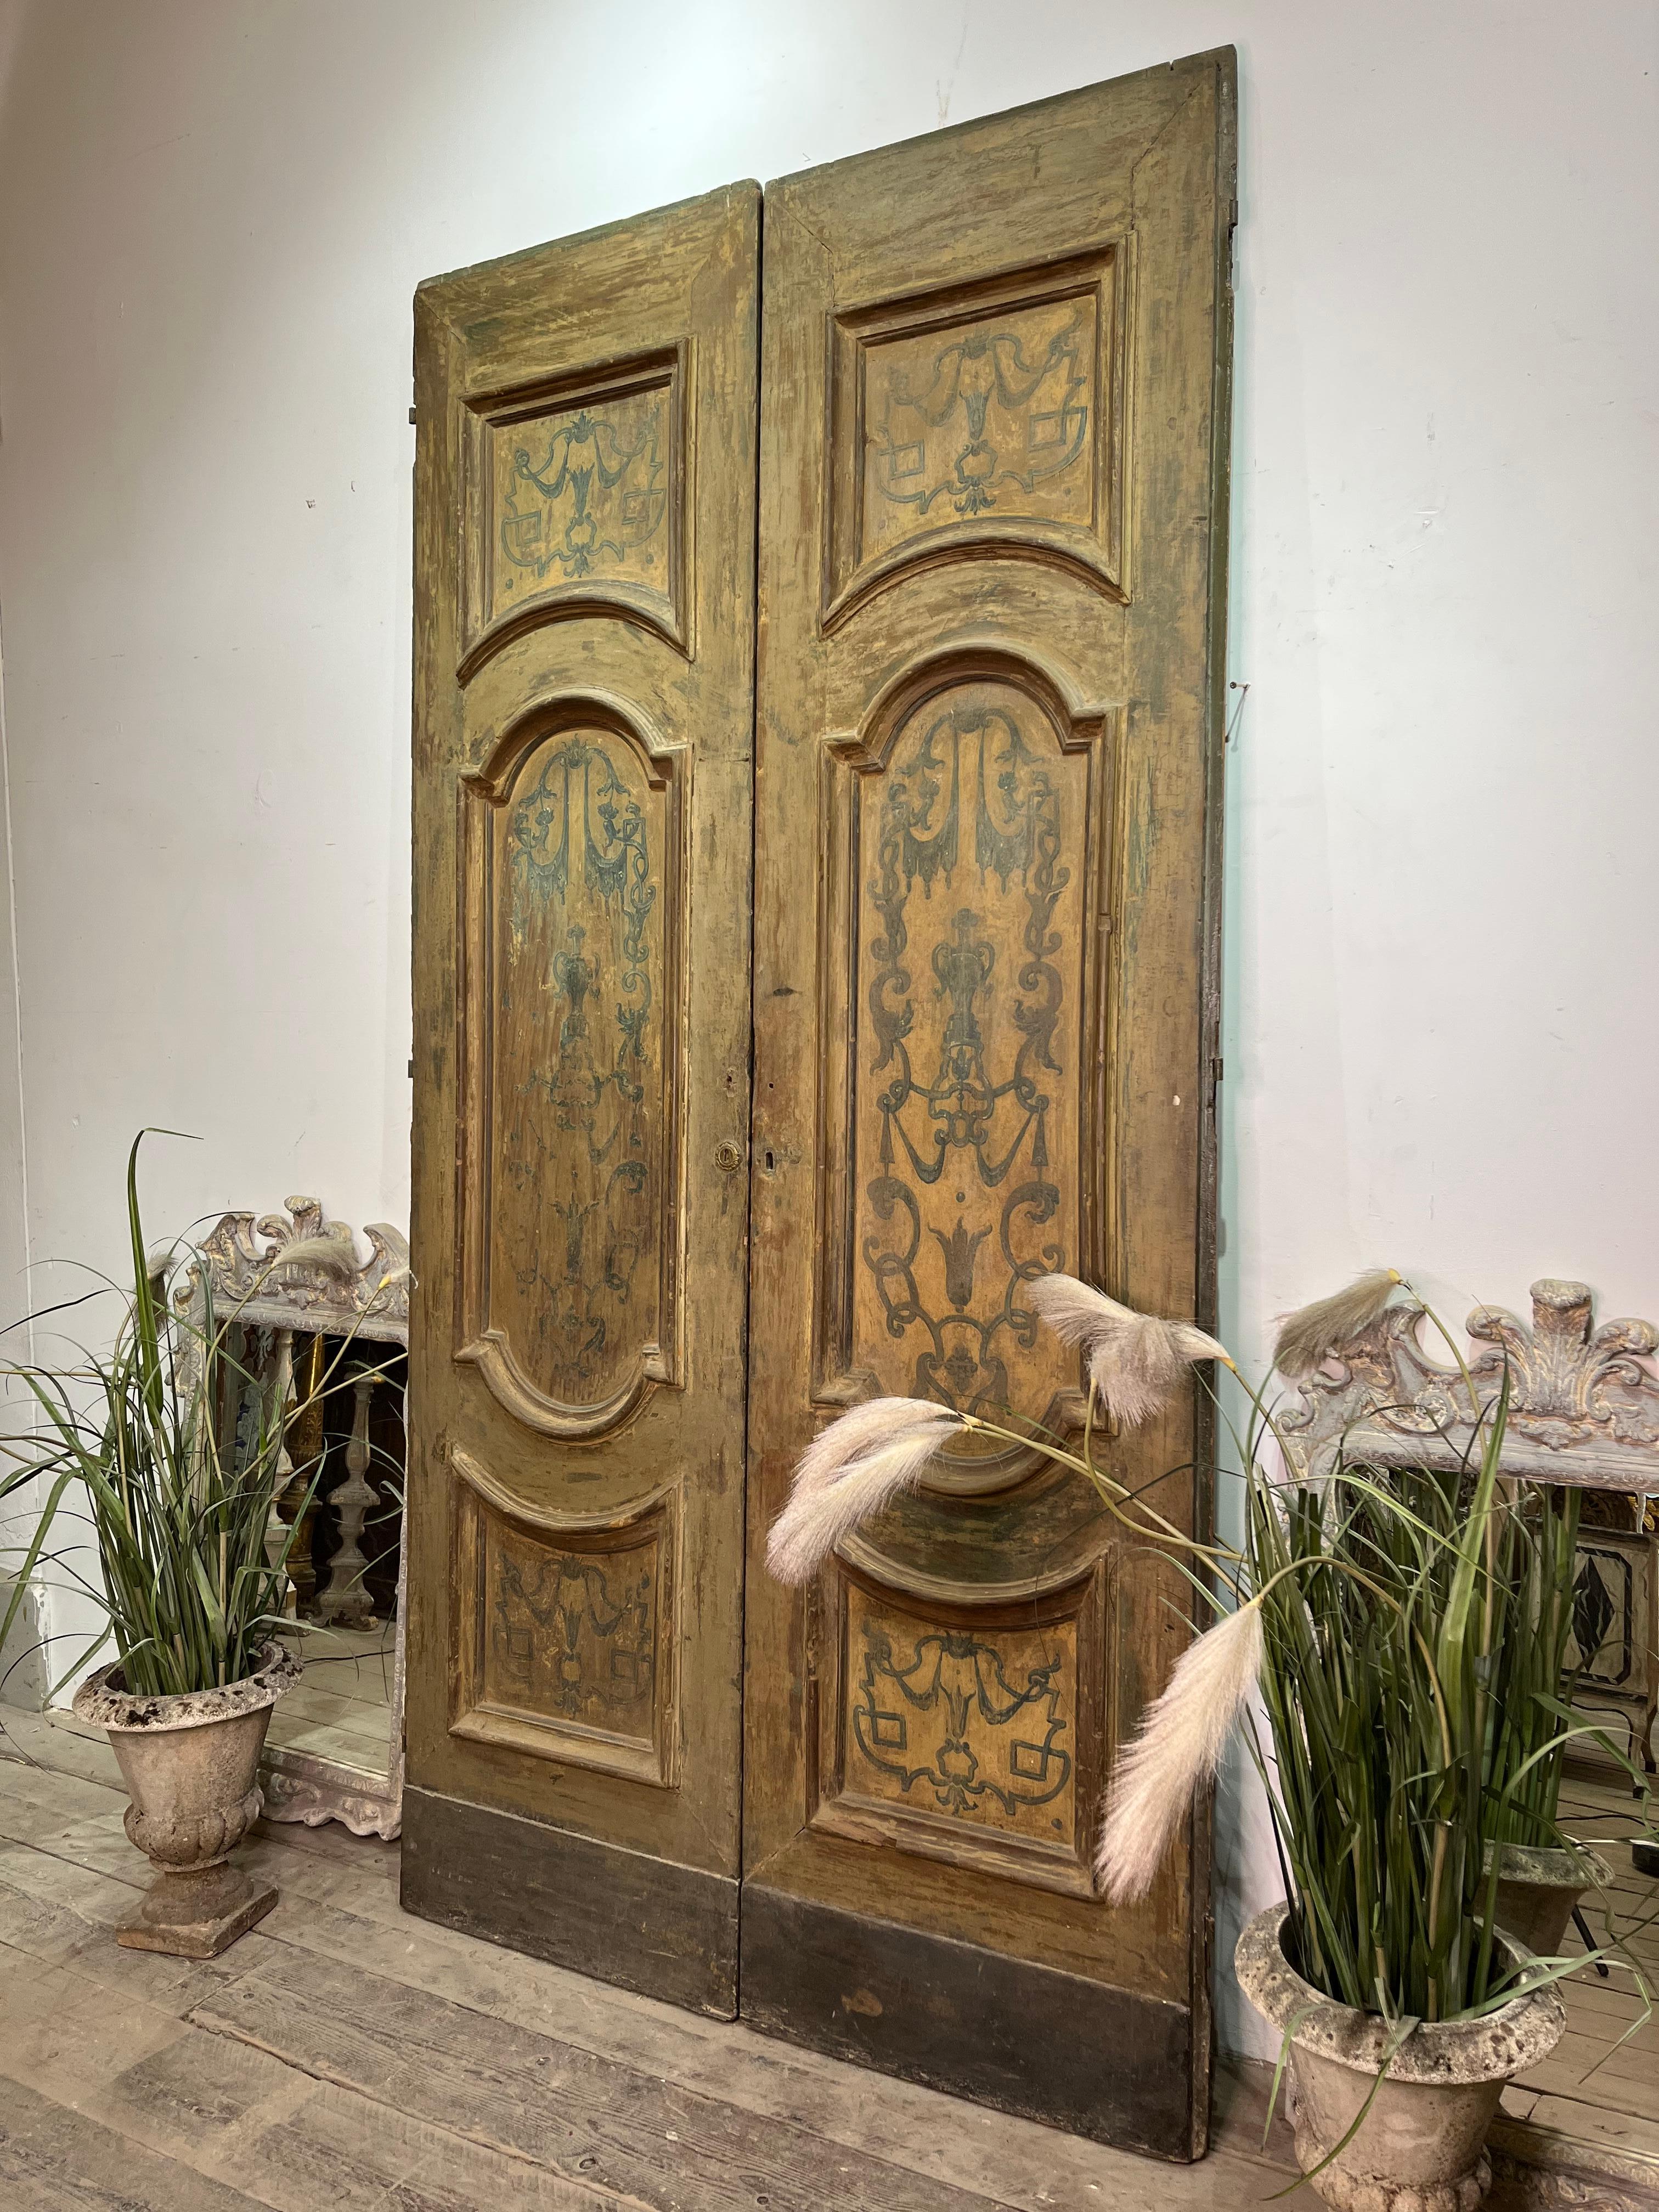 Majestic et de grande taille, cette première porte du XVIIIe siècle provient de Naples, en Italie.
Belle première patine avec des décorations à l'intérieur de chaque cadre.
Matériel d'origine. La face arrière est plus simple.
Elle peut jouer son